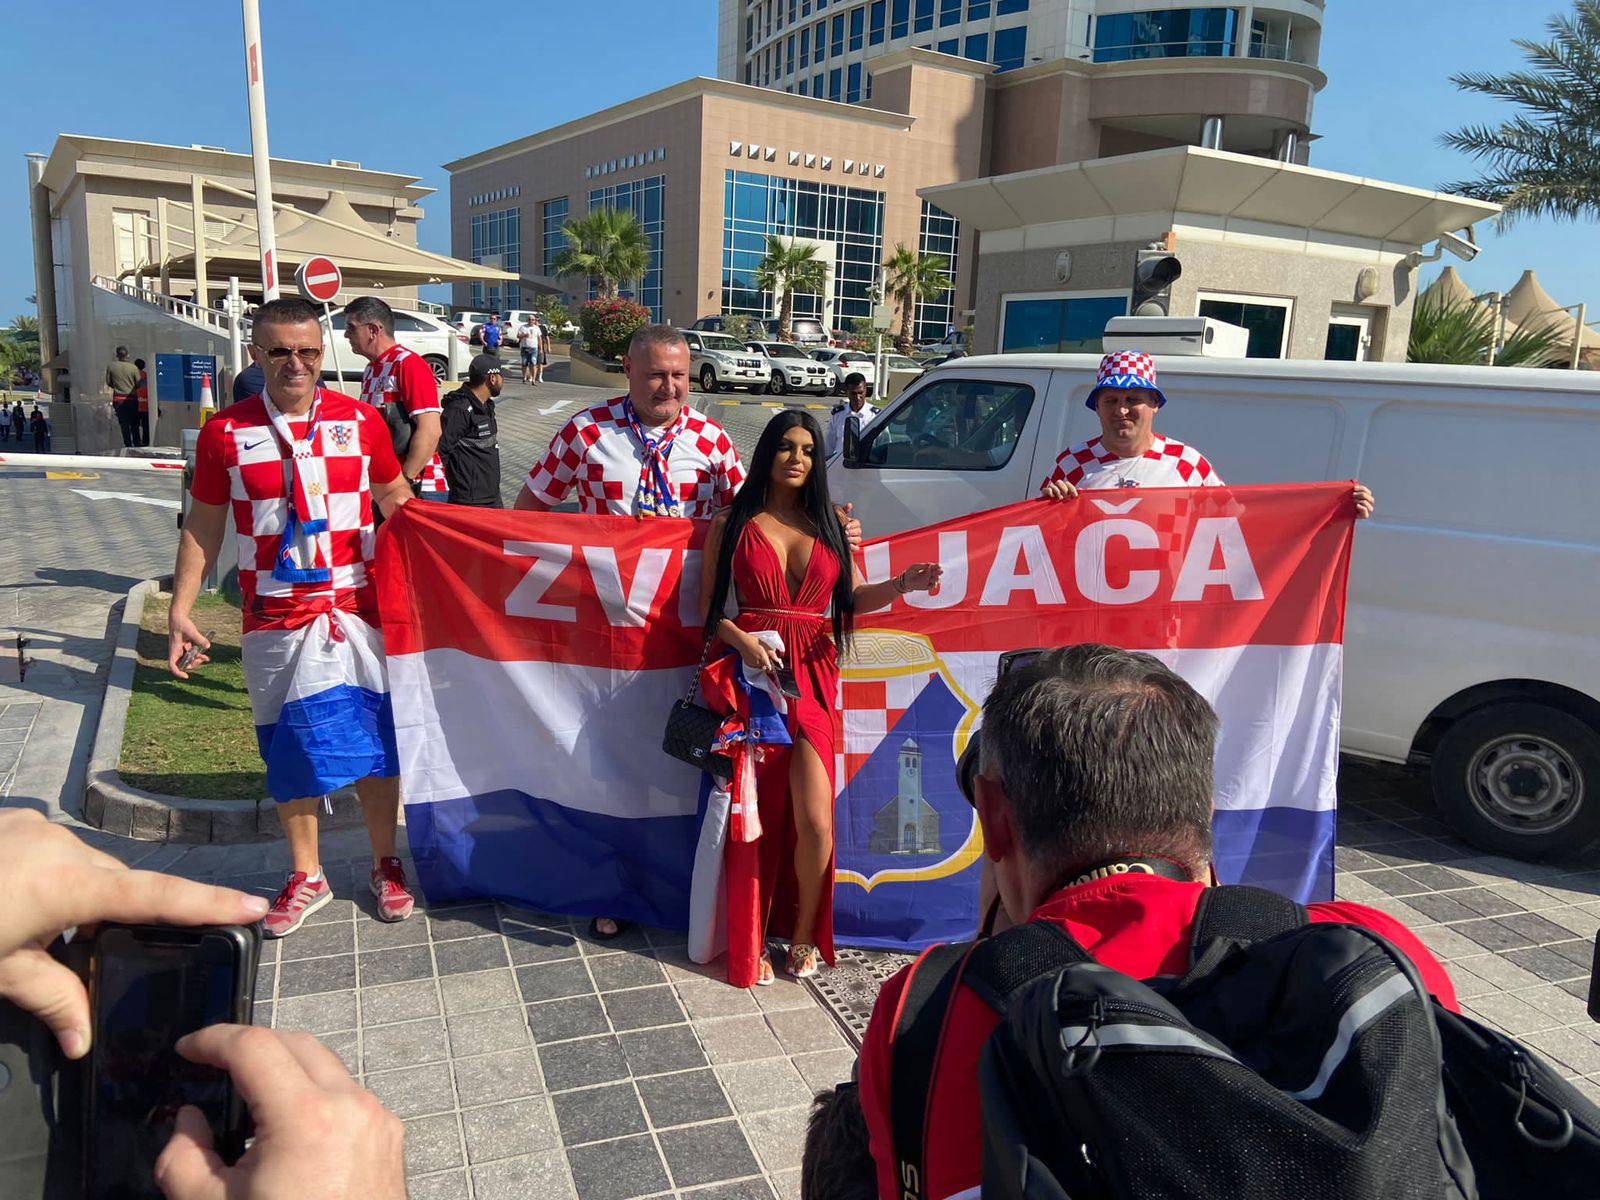 Crnokosa Magdalena uoči borbe s Argentinom: 'Hrvatska će pobijediti. Vidimo se u finalu!'